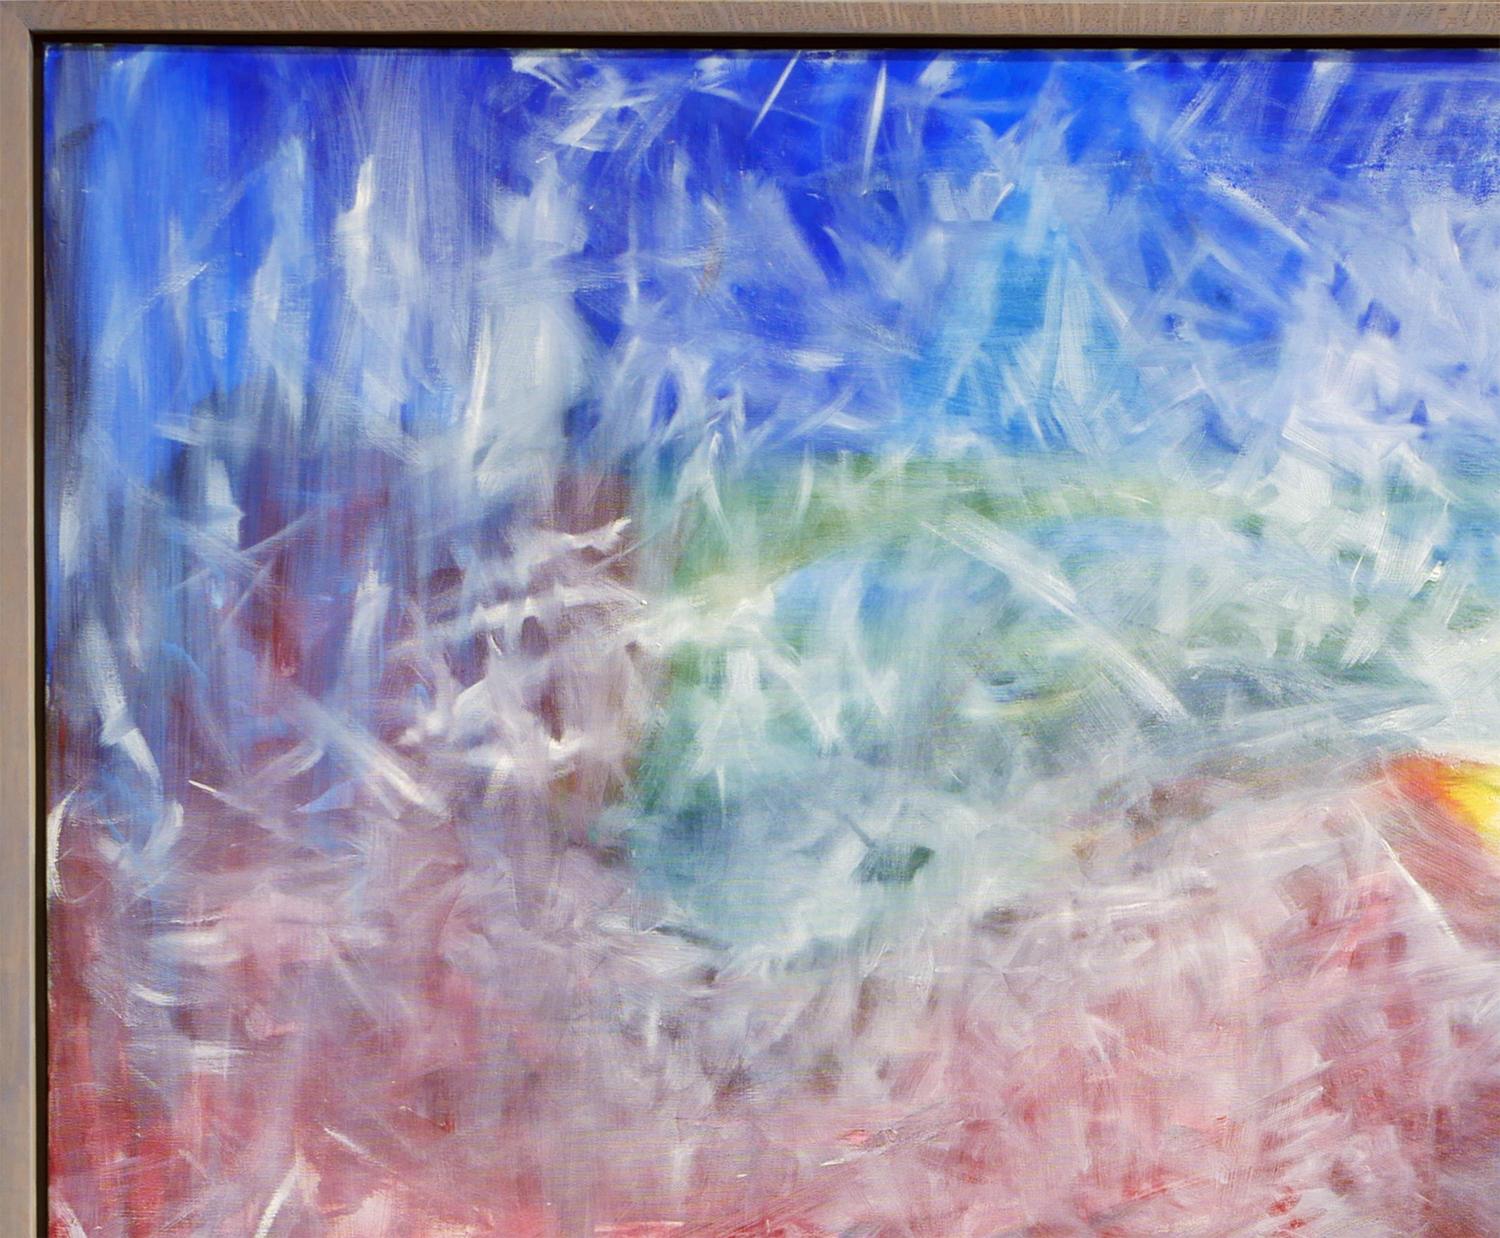 Peinture expressionniste abstraite bleue, rouge et verte avec éléments géométriques - Expressionnisme abstrait Painting par John Calaway